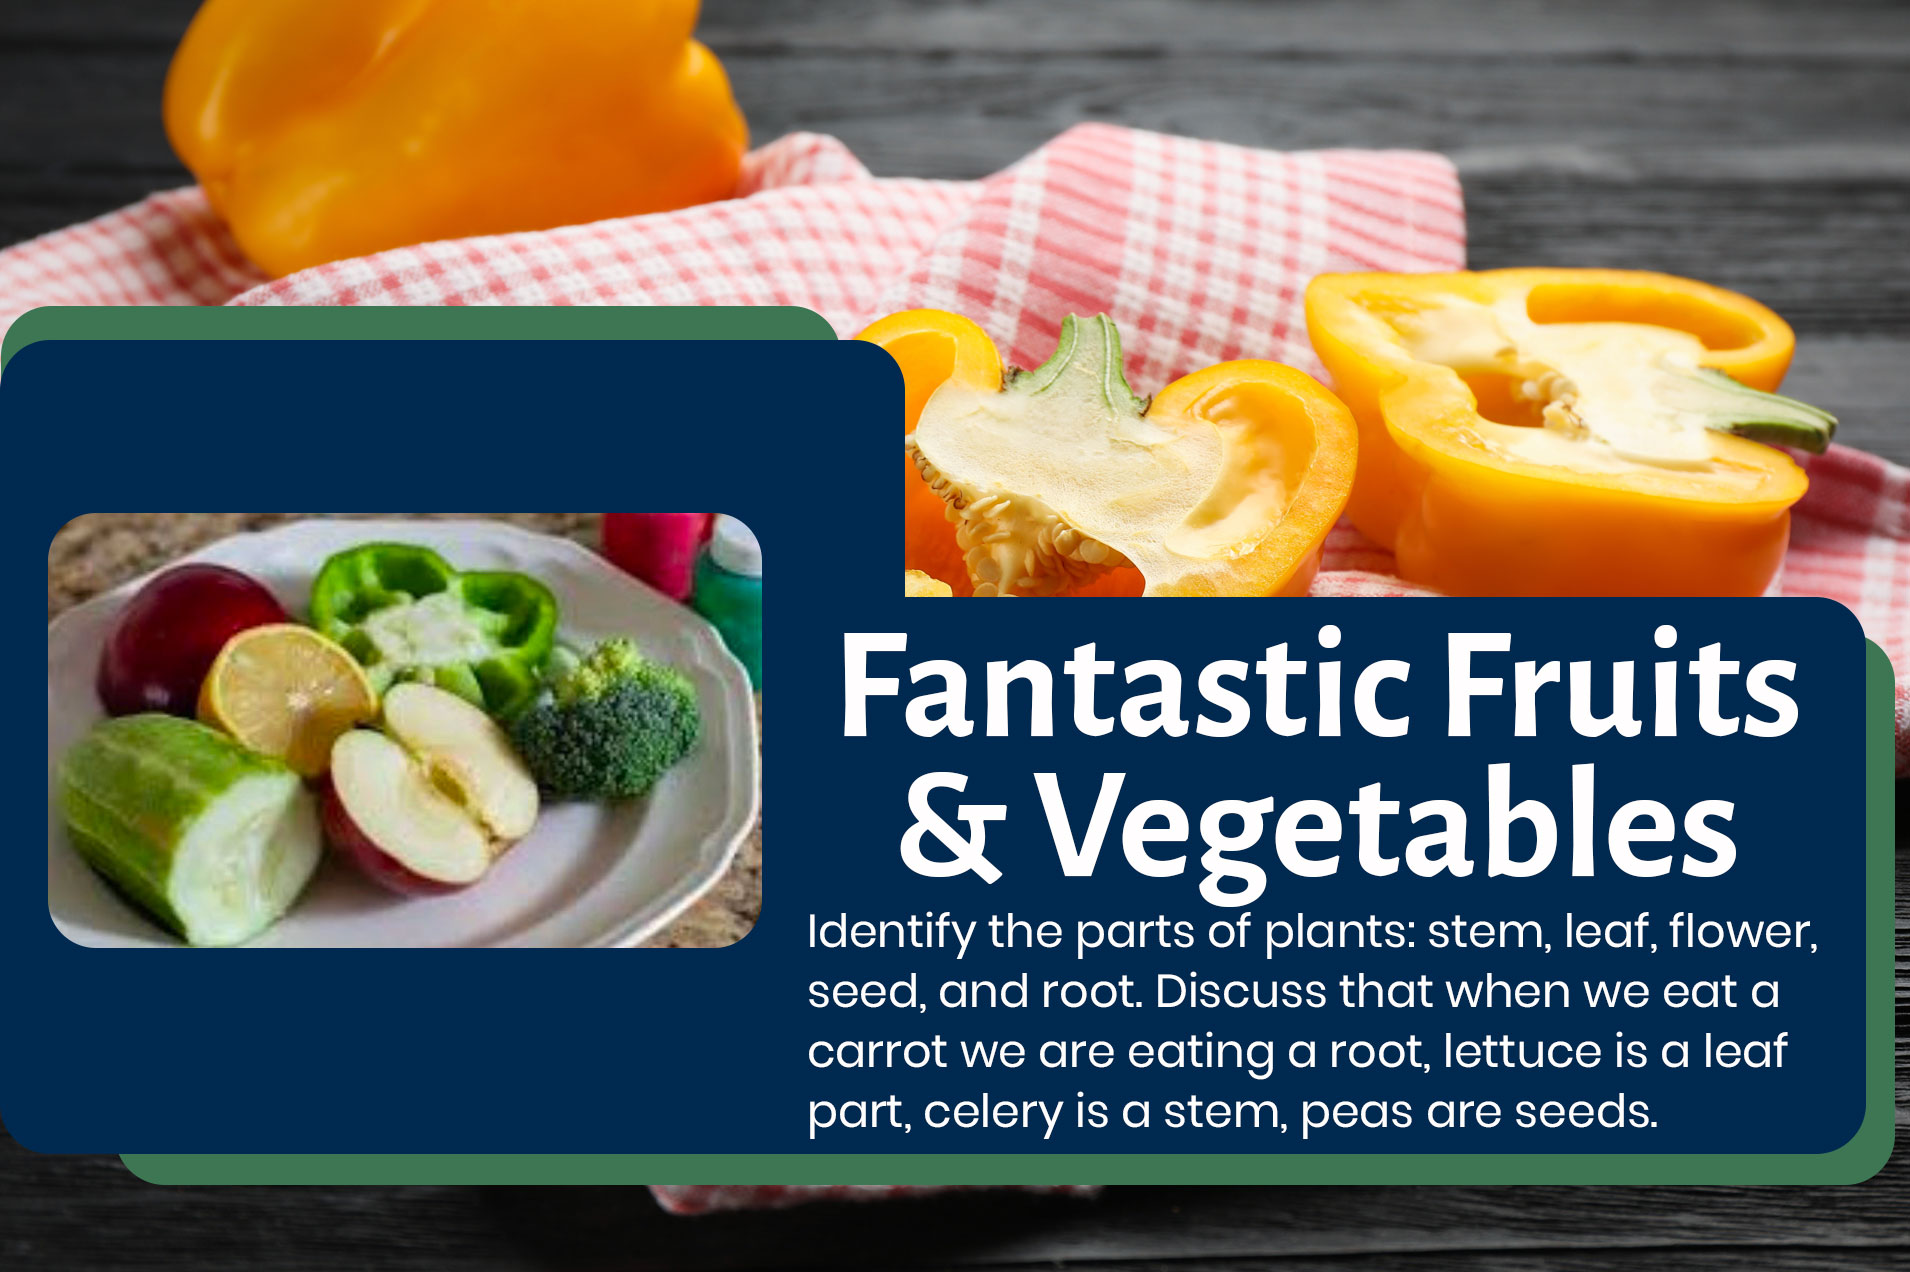 Fantastic Fruits & Vegetables